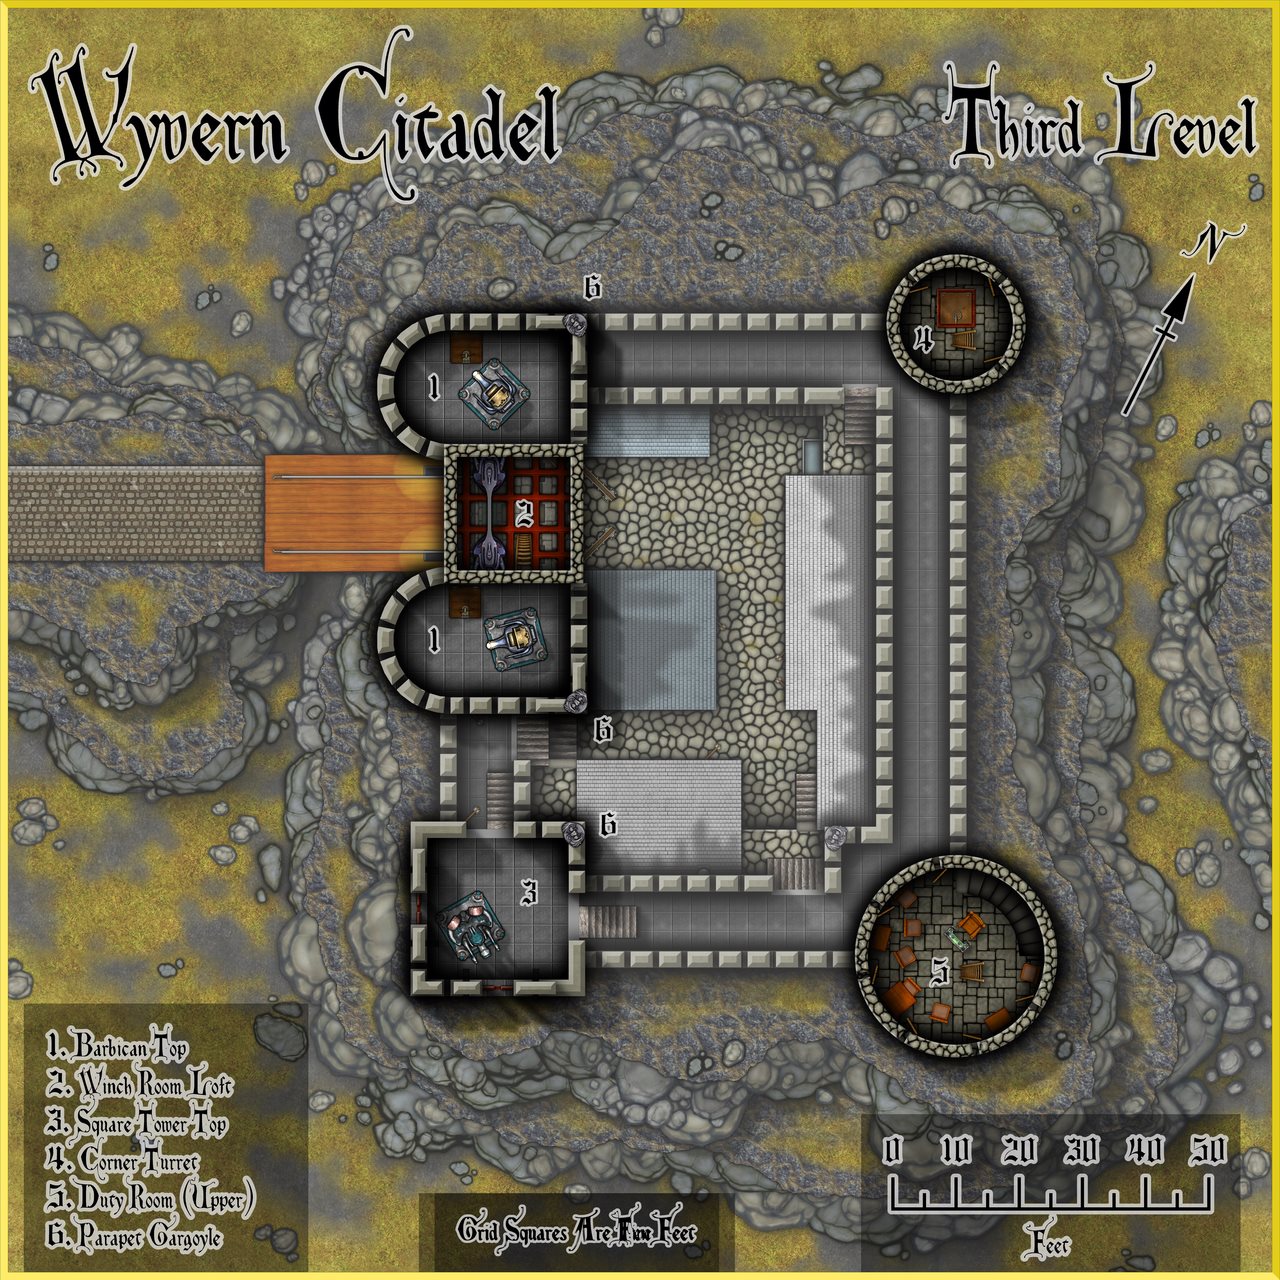 Nibirum Map: wyvern citadel - third level by Wyvern